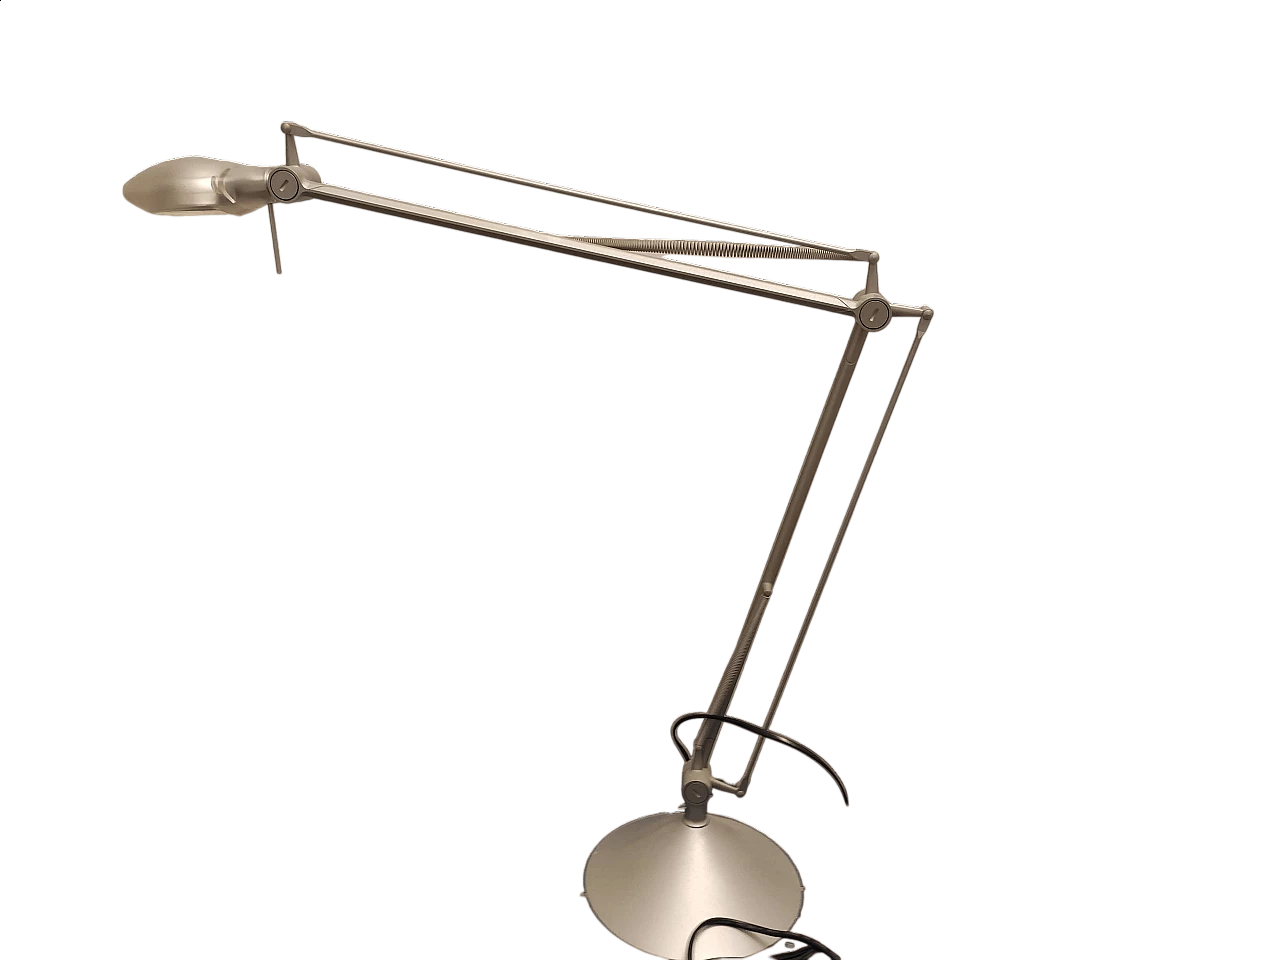 【通販在庫あ】FLOS “ARCHIMOON TECH” Philippe Starck フロアライト フィリップ・スタルク 照明 ランプ イタリア モダン ヤマギワ Yamagiwa フロアスタンド